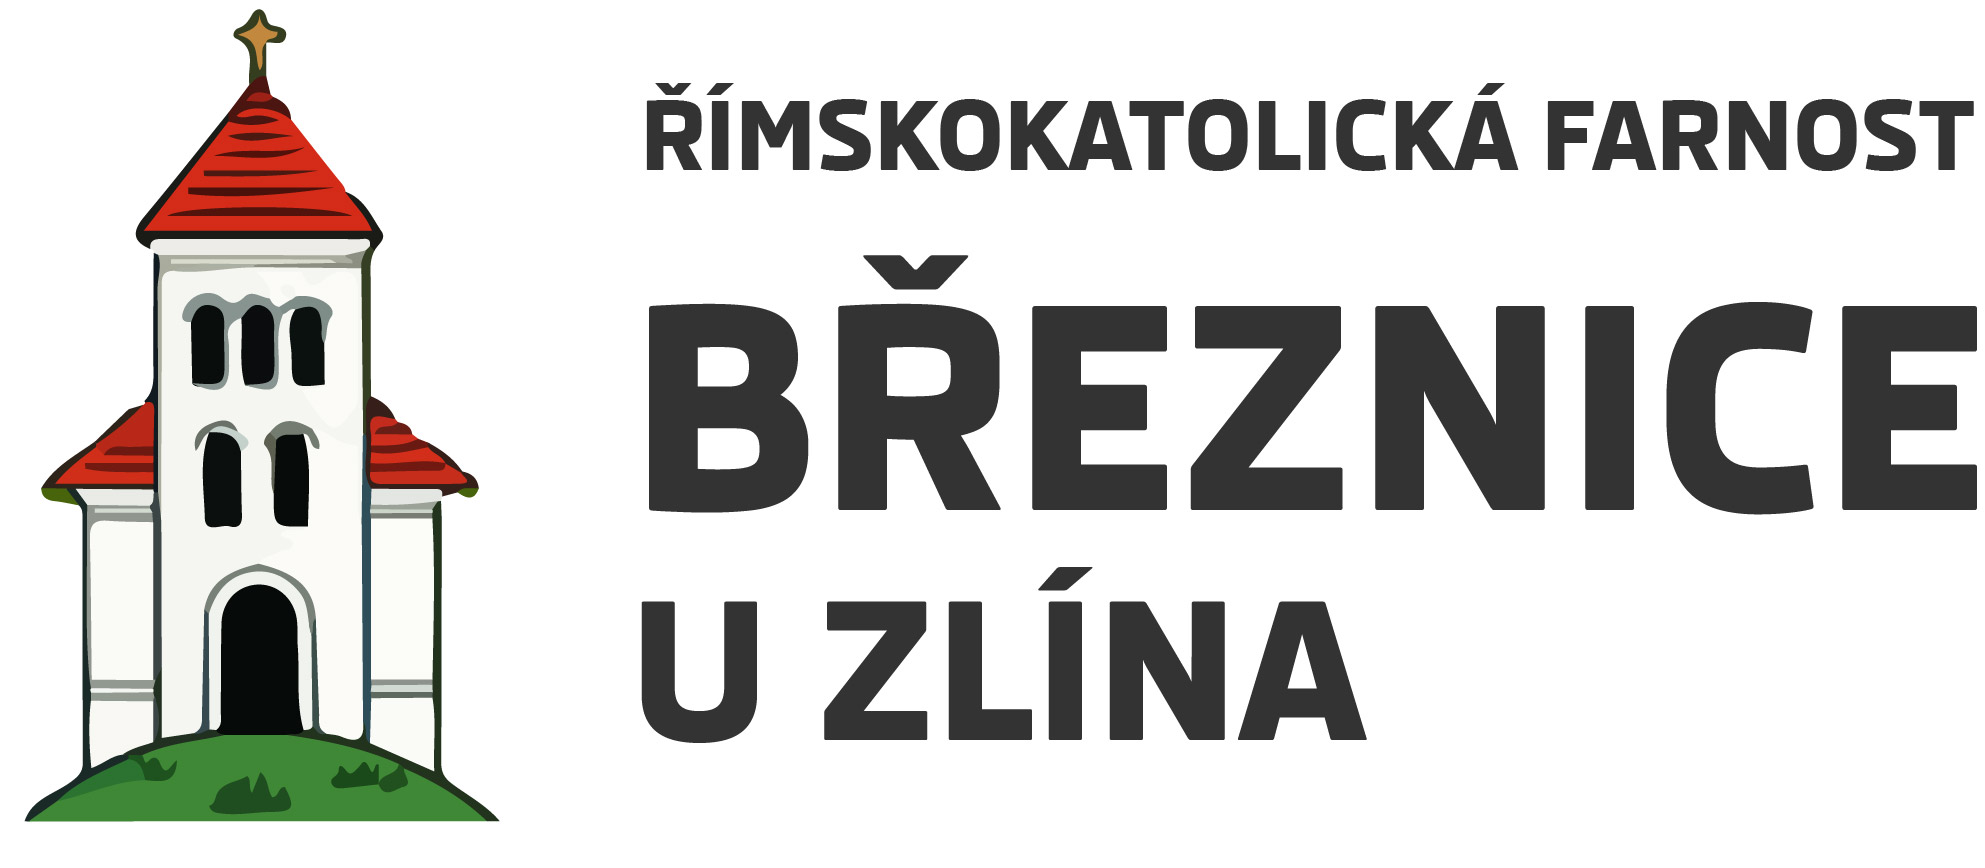 Logo Rezervace intence online - Římskokatolická farnost Březnice u Zlína